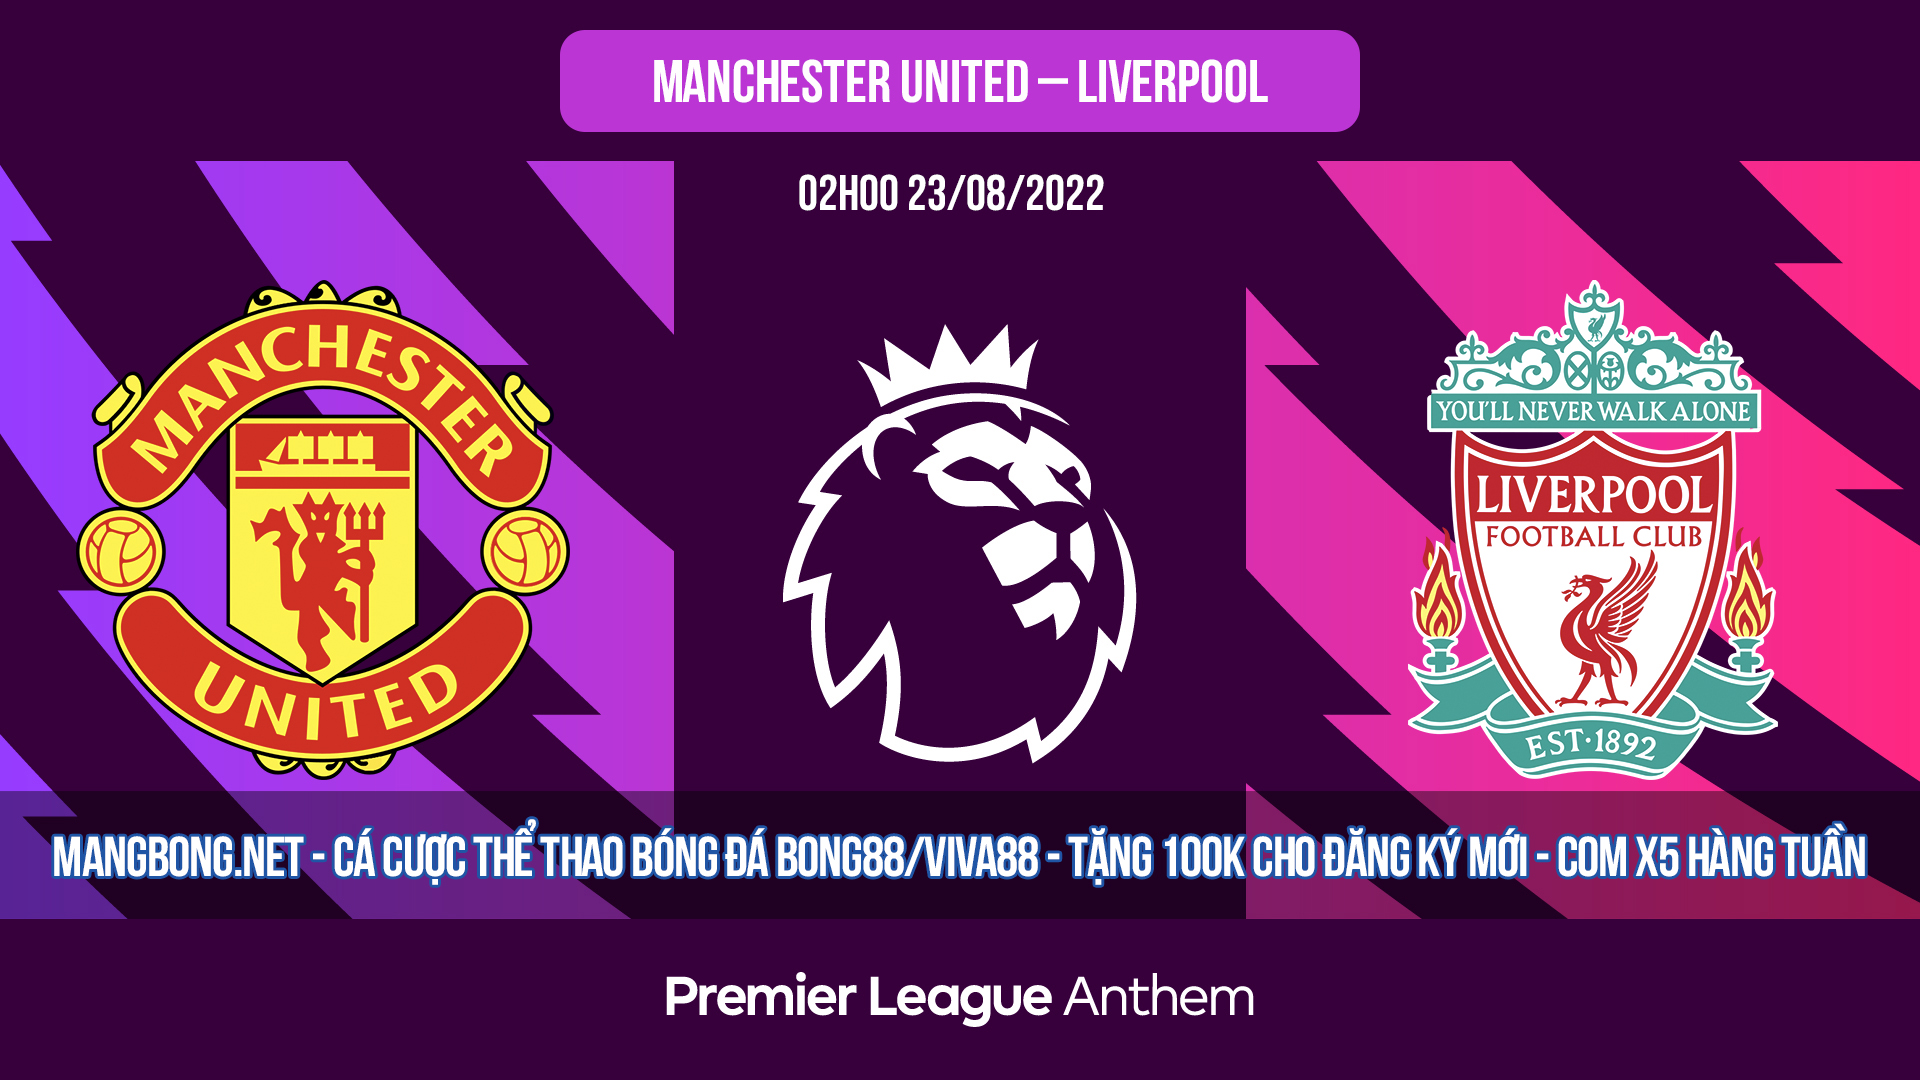 Soi kèo bóng đá Manchester United vs Liverpool – 02h00 22/08/2022